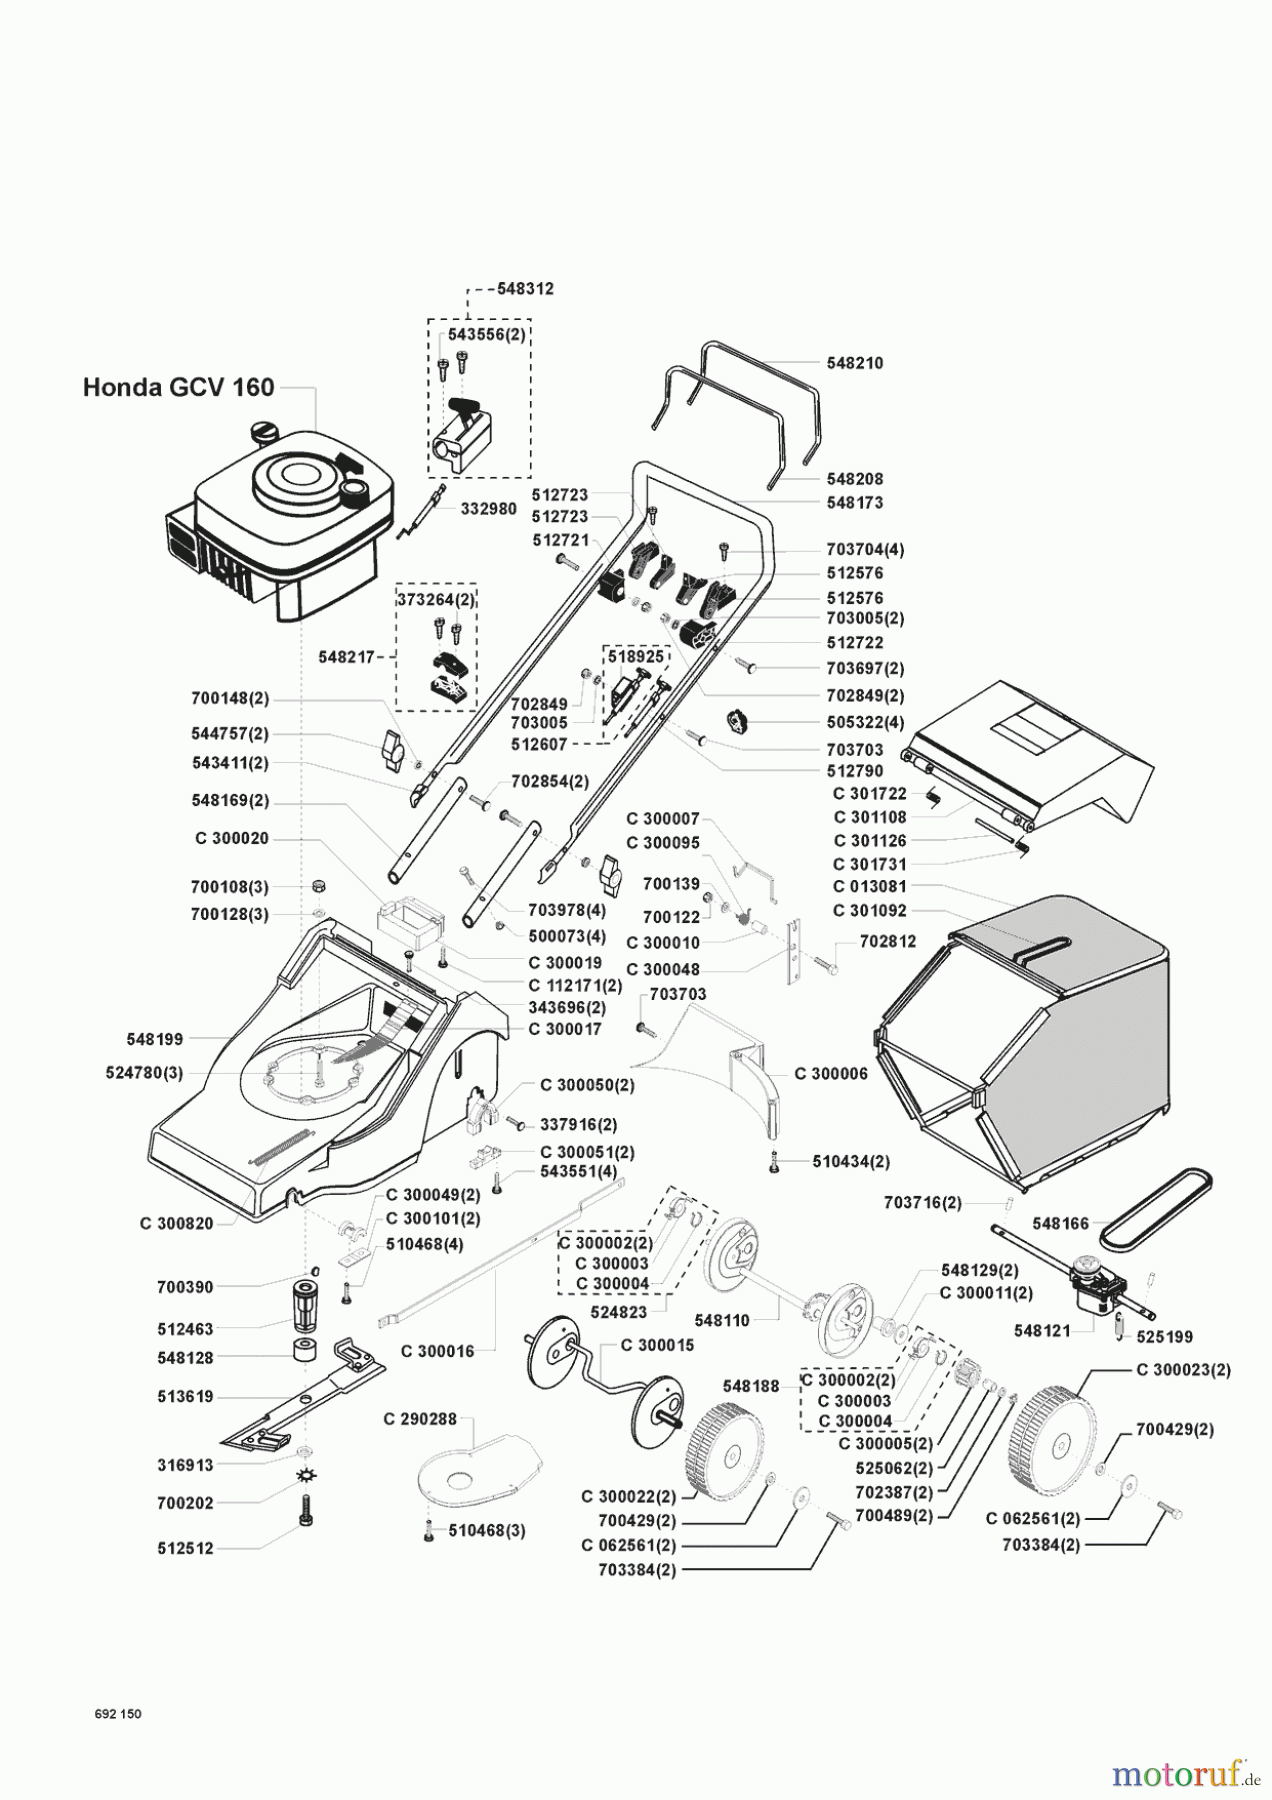  Concord Gartentechnik Benzinrasenmäher 4600 HR vor 01/1999 Seite 1